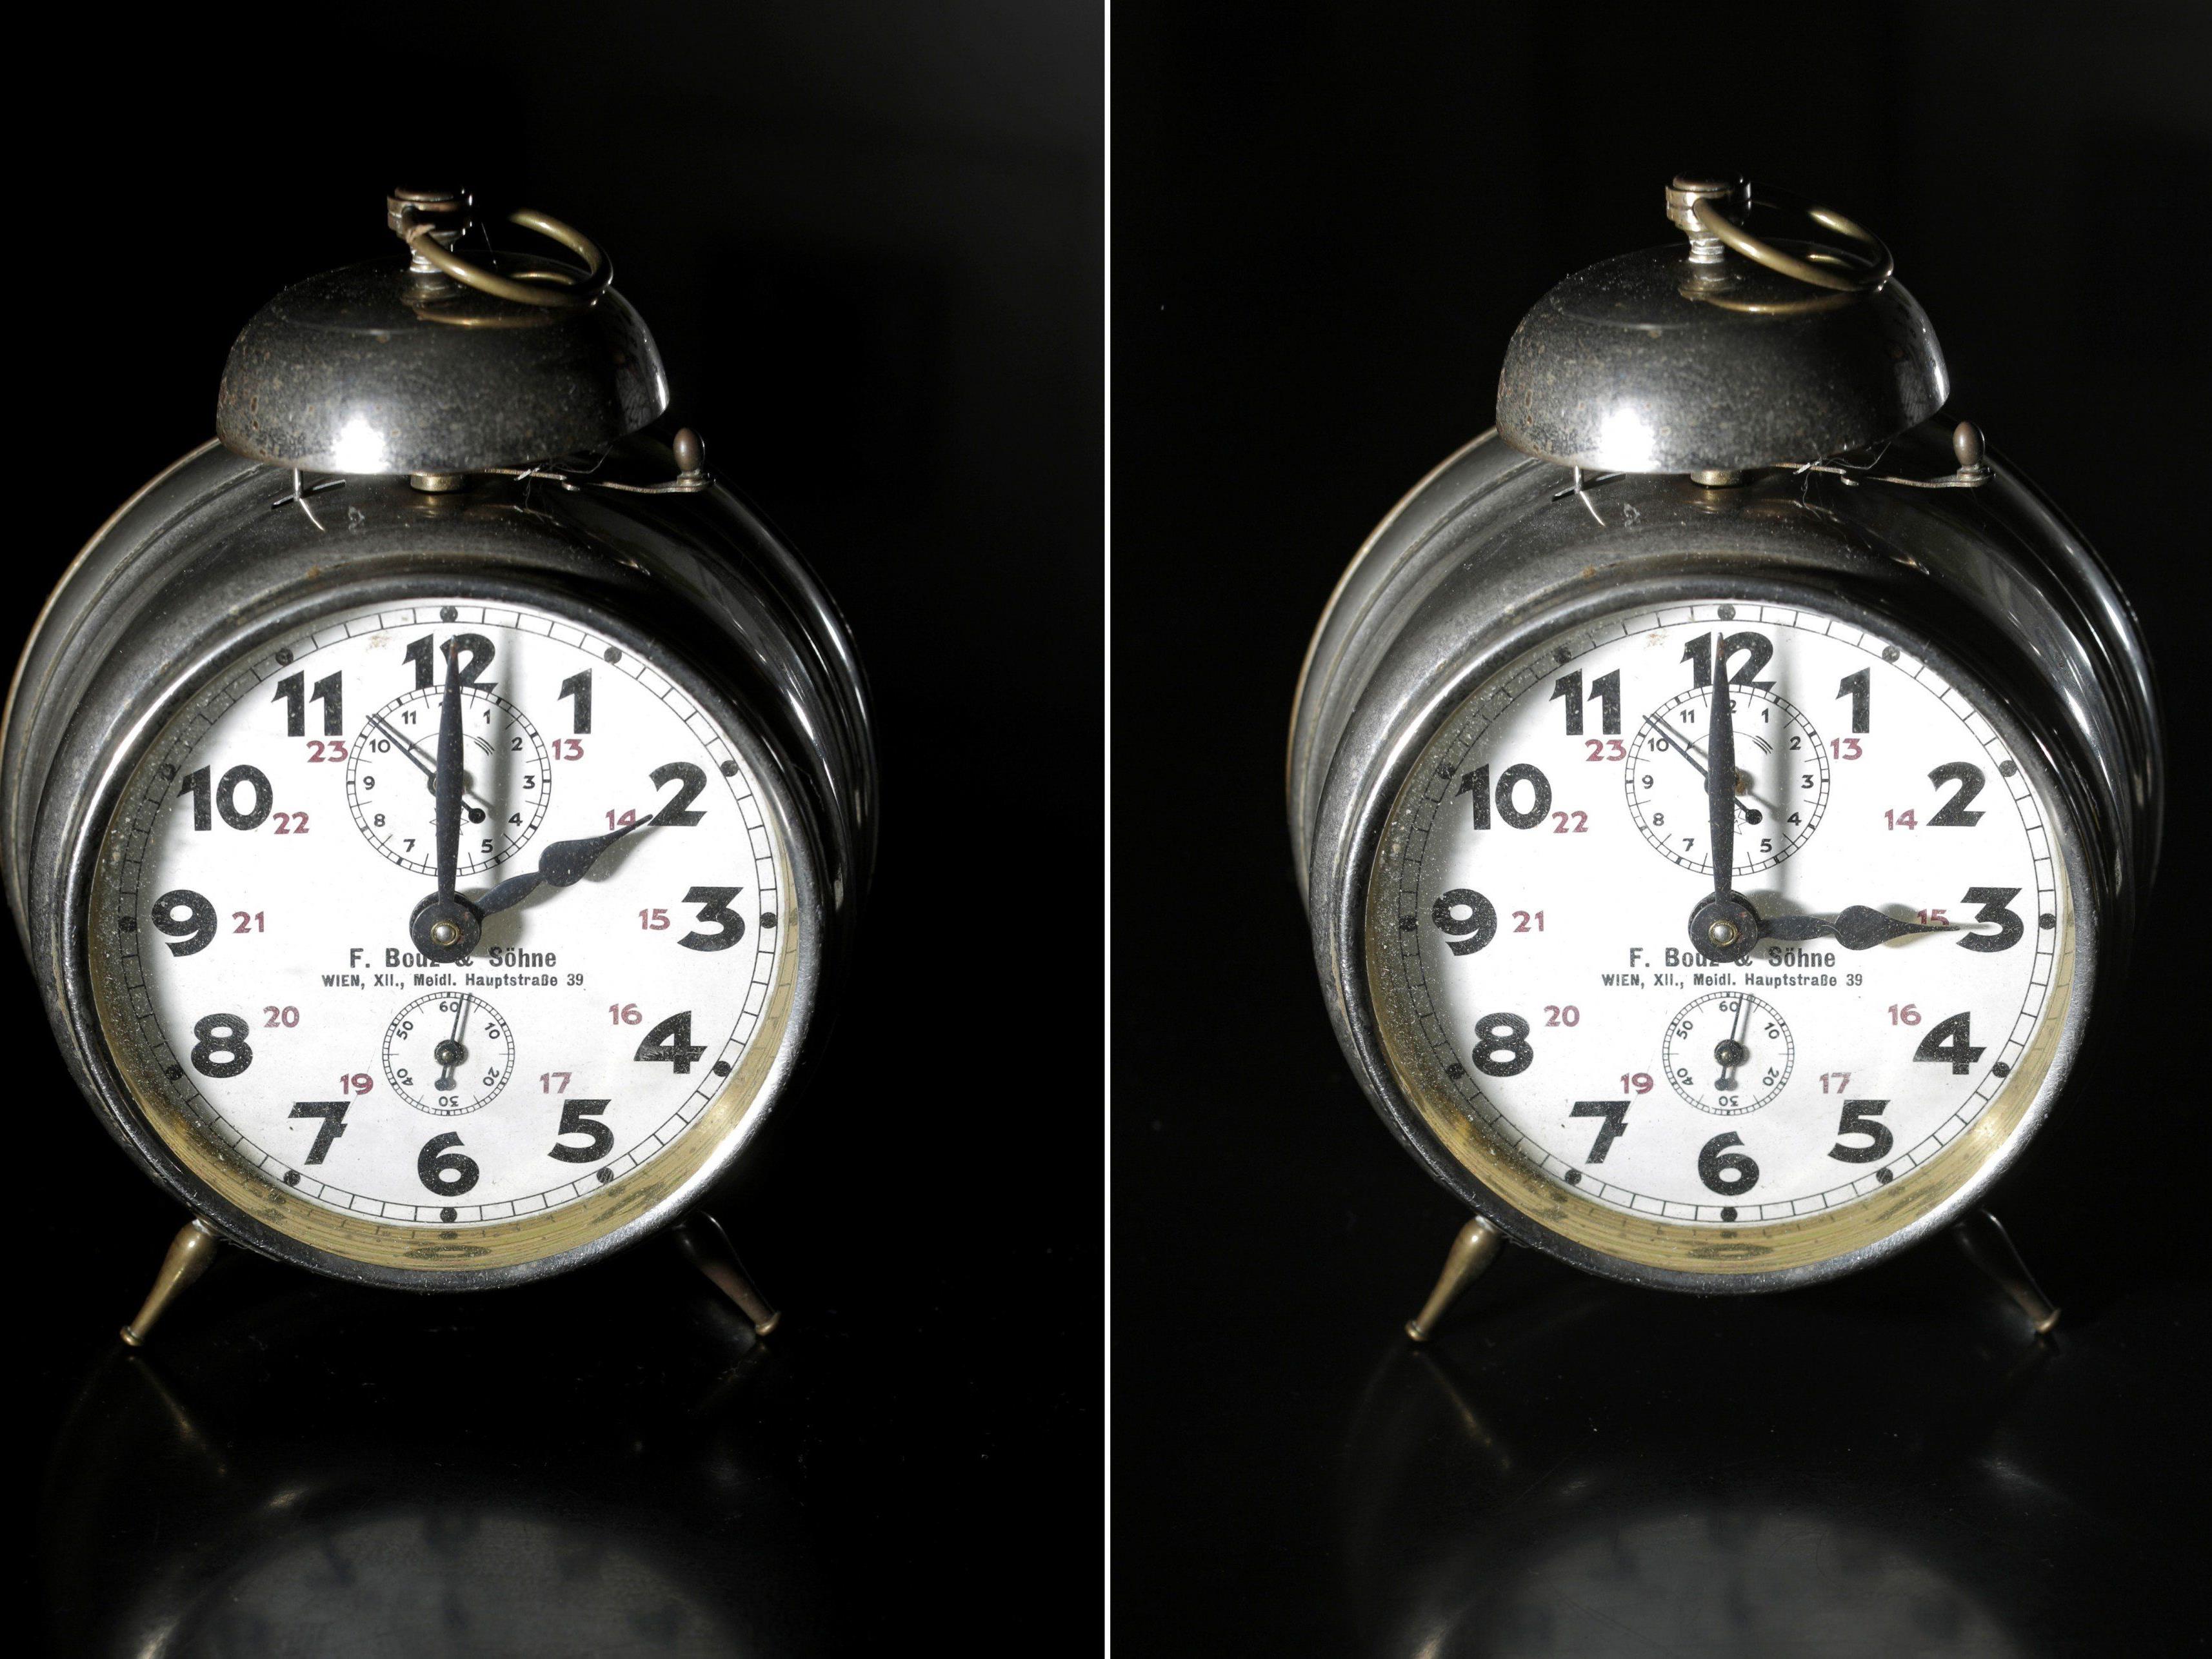 Am kommenden Wochenende werden in ganz Europa die Uhren von zwei auf drei Uhr vorgestellt.